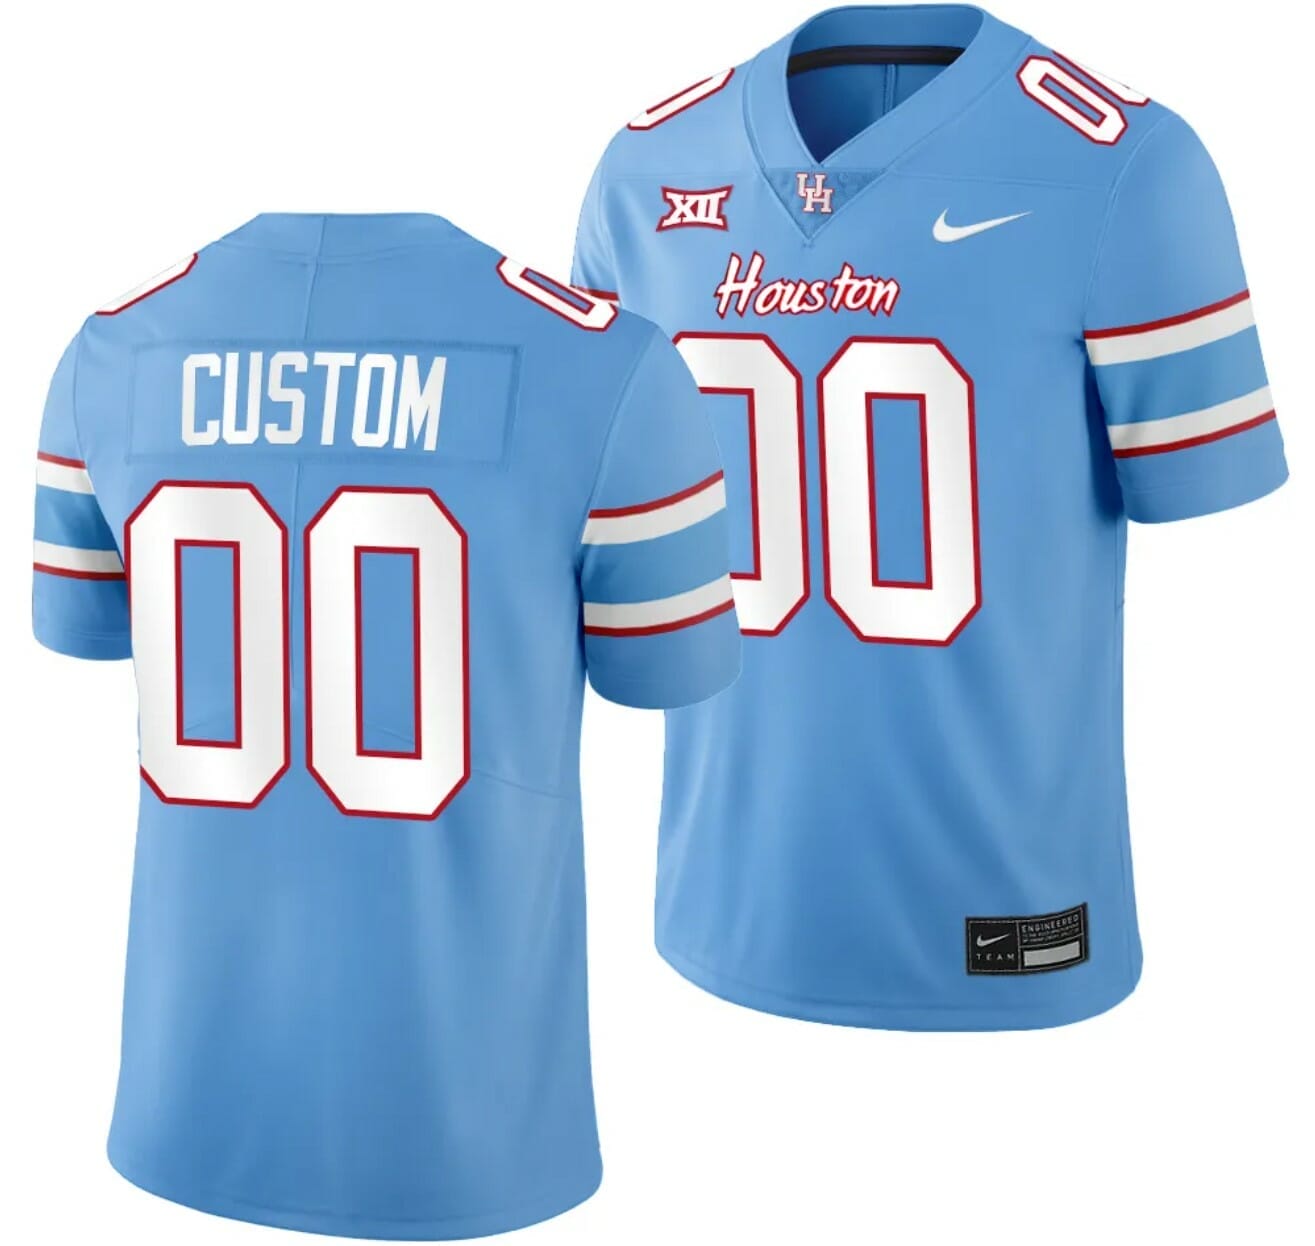 BYU Cougars NCAA football custom jersey